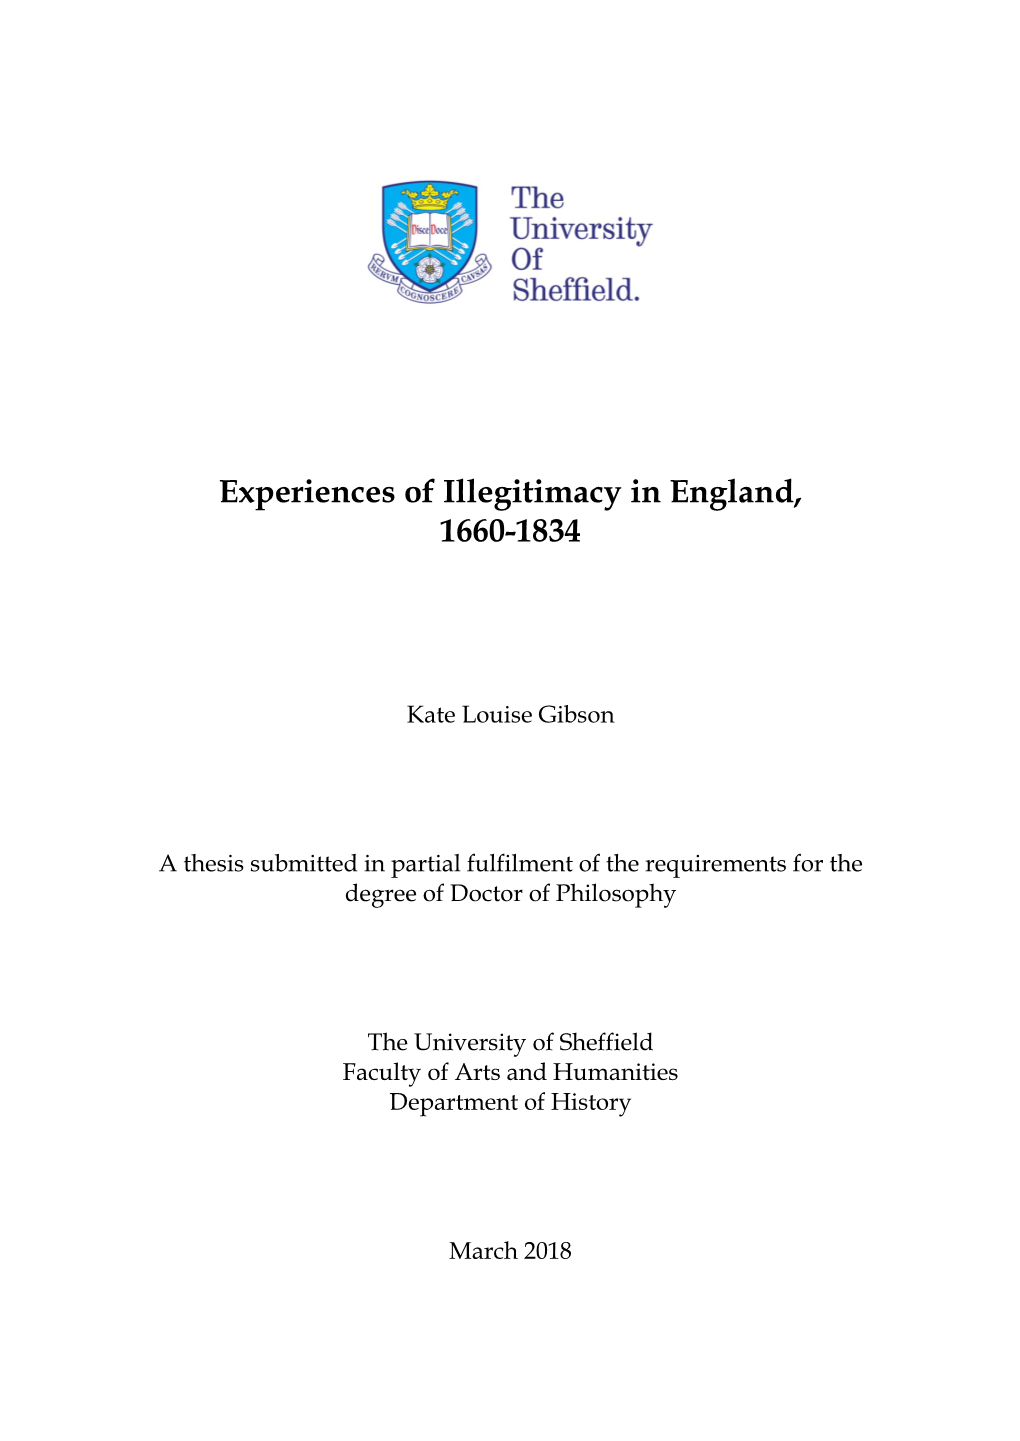 Experiences of Illegitimacy in England, 1660-1834